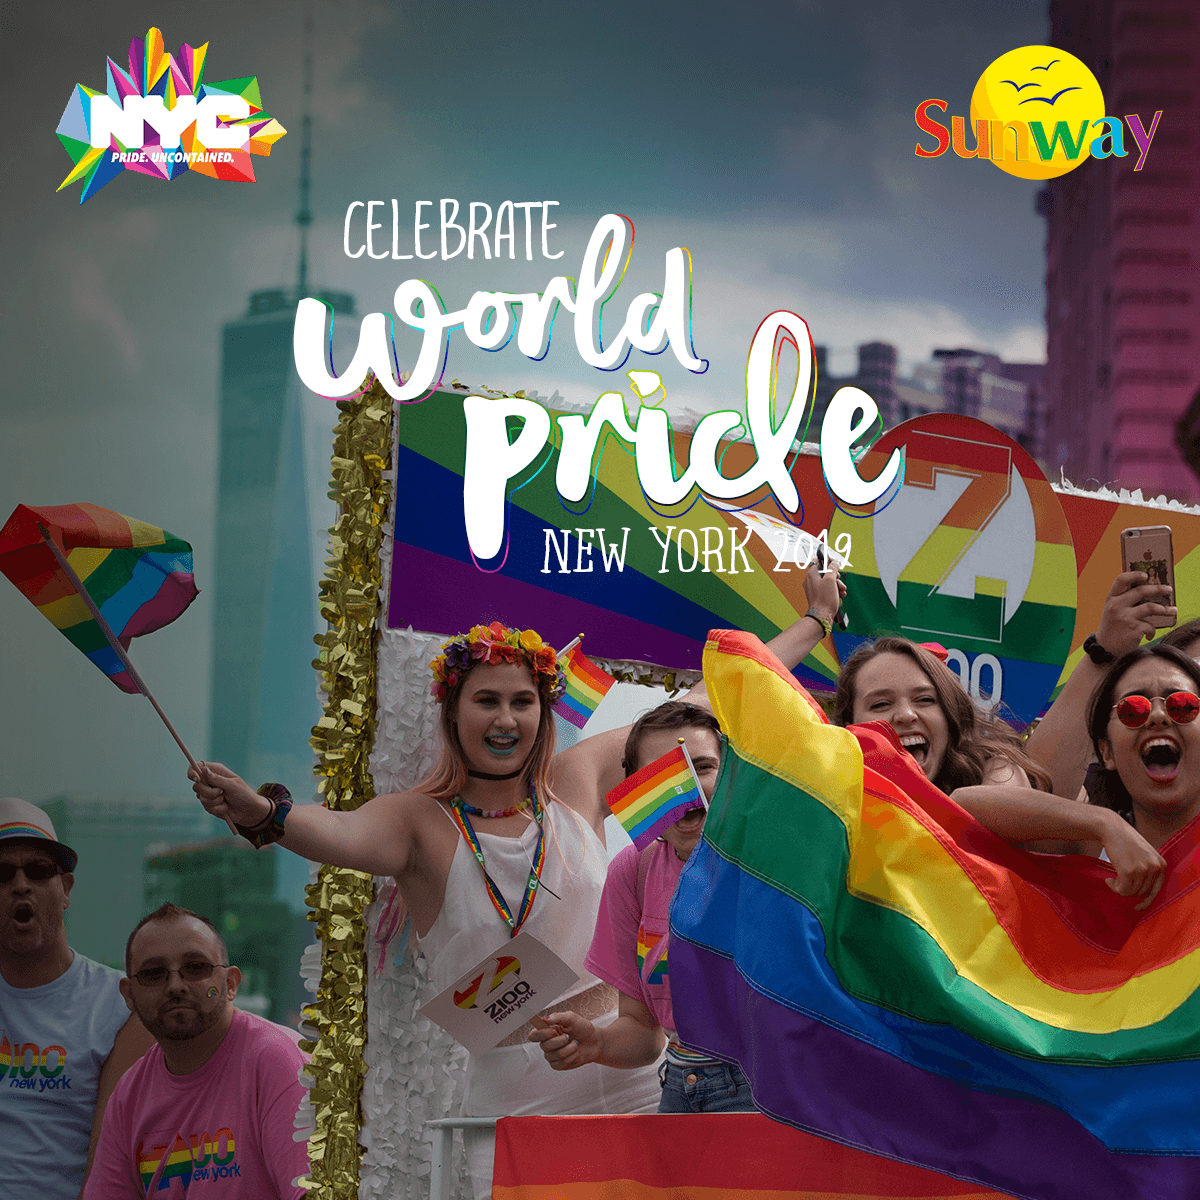 Celebrate 2019 World Pride in New York from €995pp